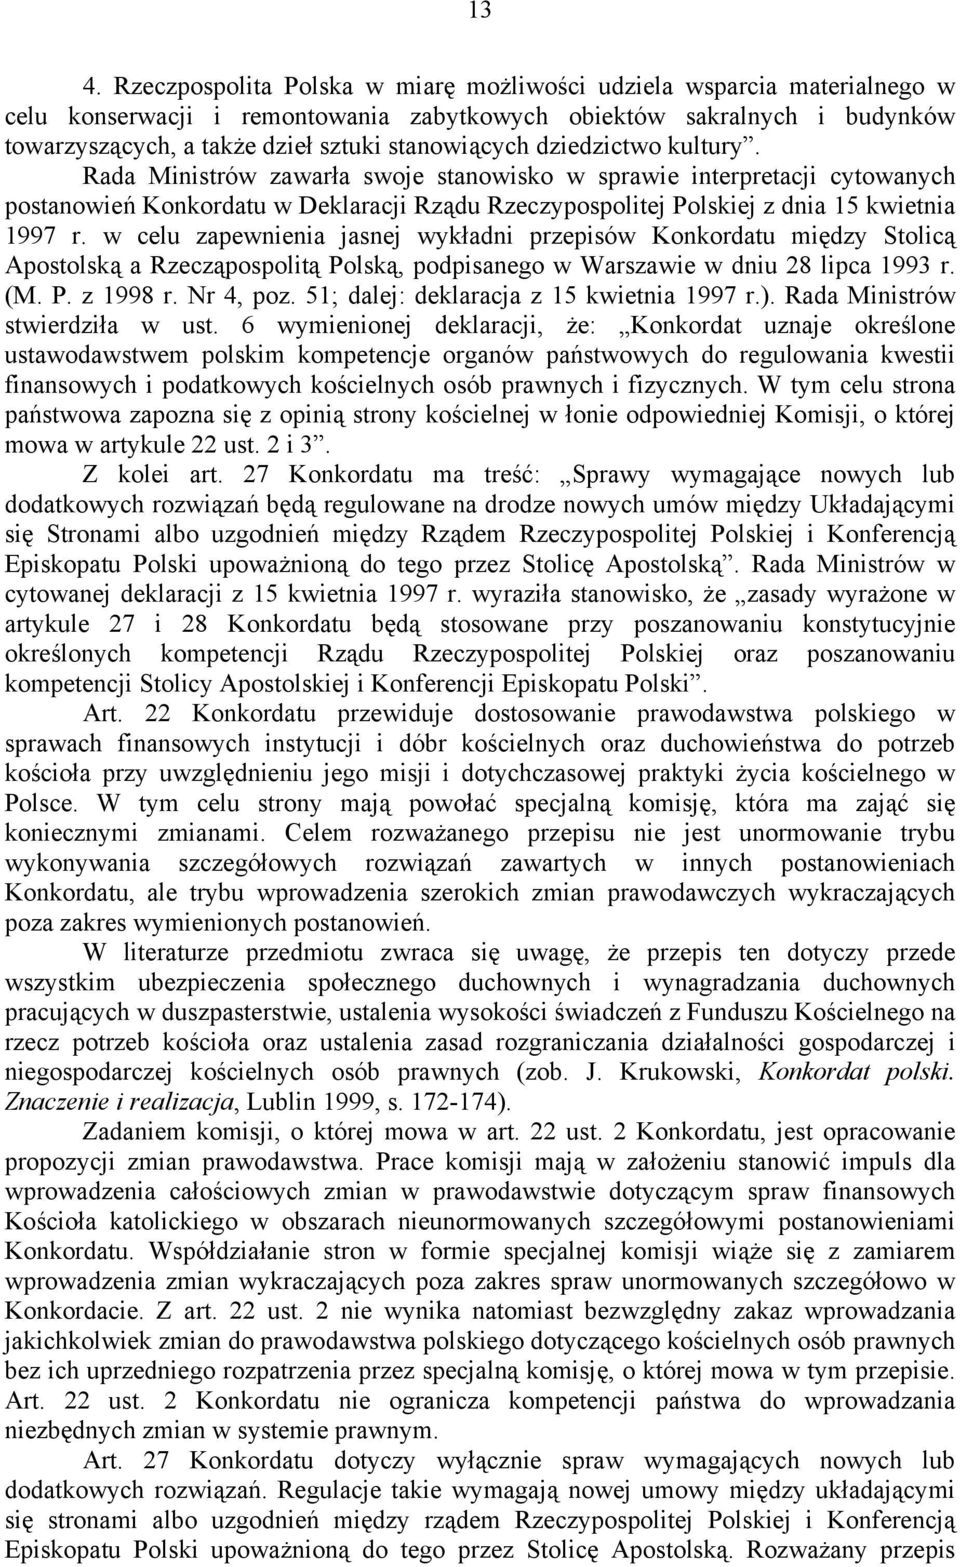 Rada Ministrów zawarła swoje stanowisko w sprawie interpretacji cytowanych postanowień Konkordatu w Deklaracji Rządu Rzeczypospolitej Polskiej z dnia 15 kwietnia 1997 r.